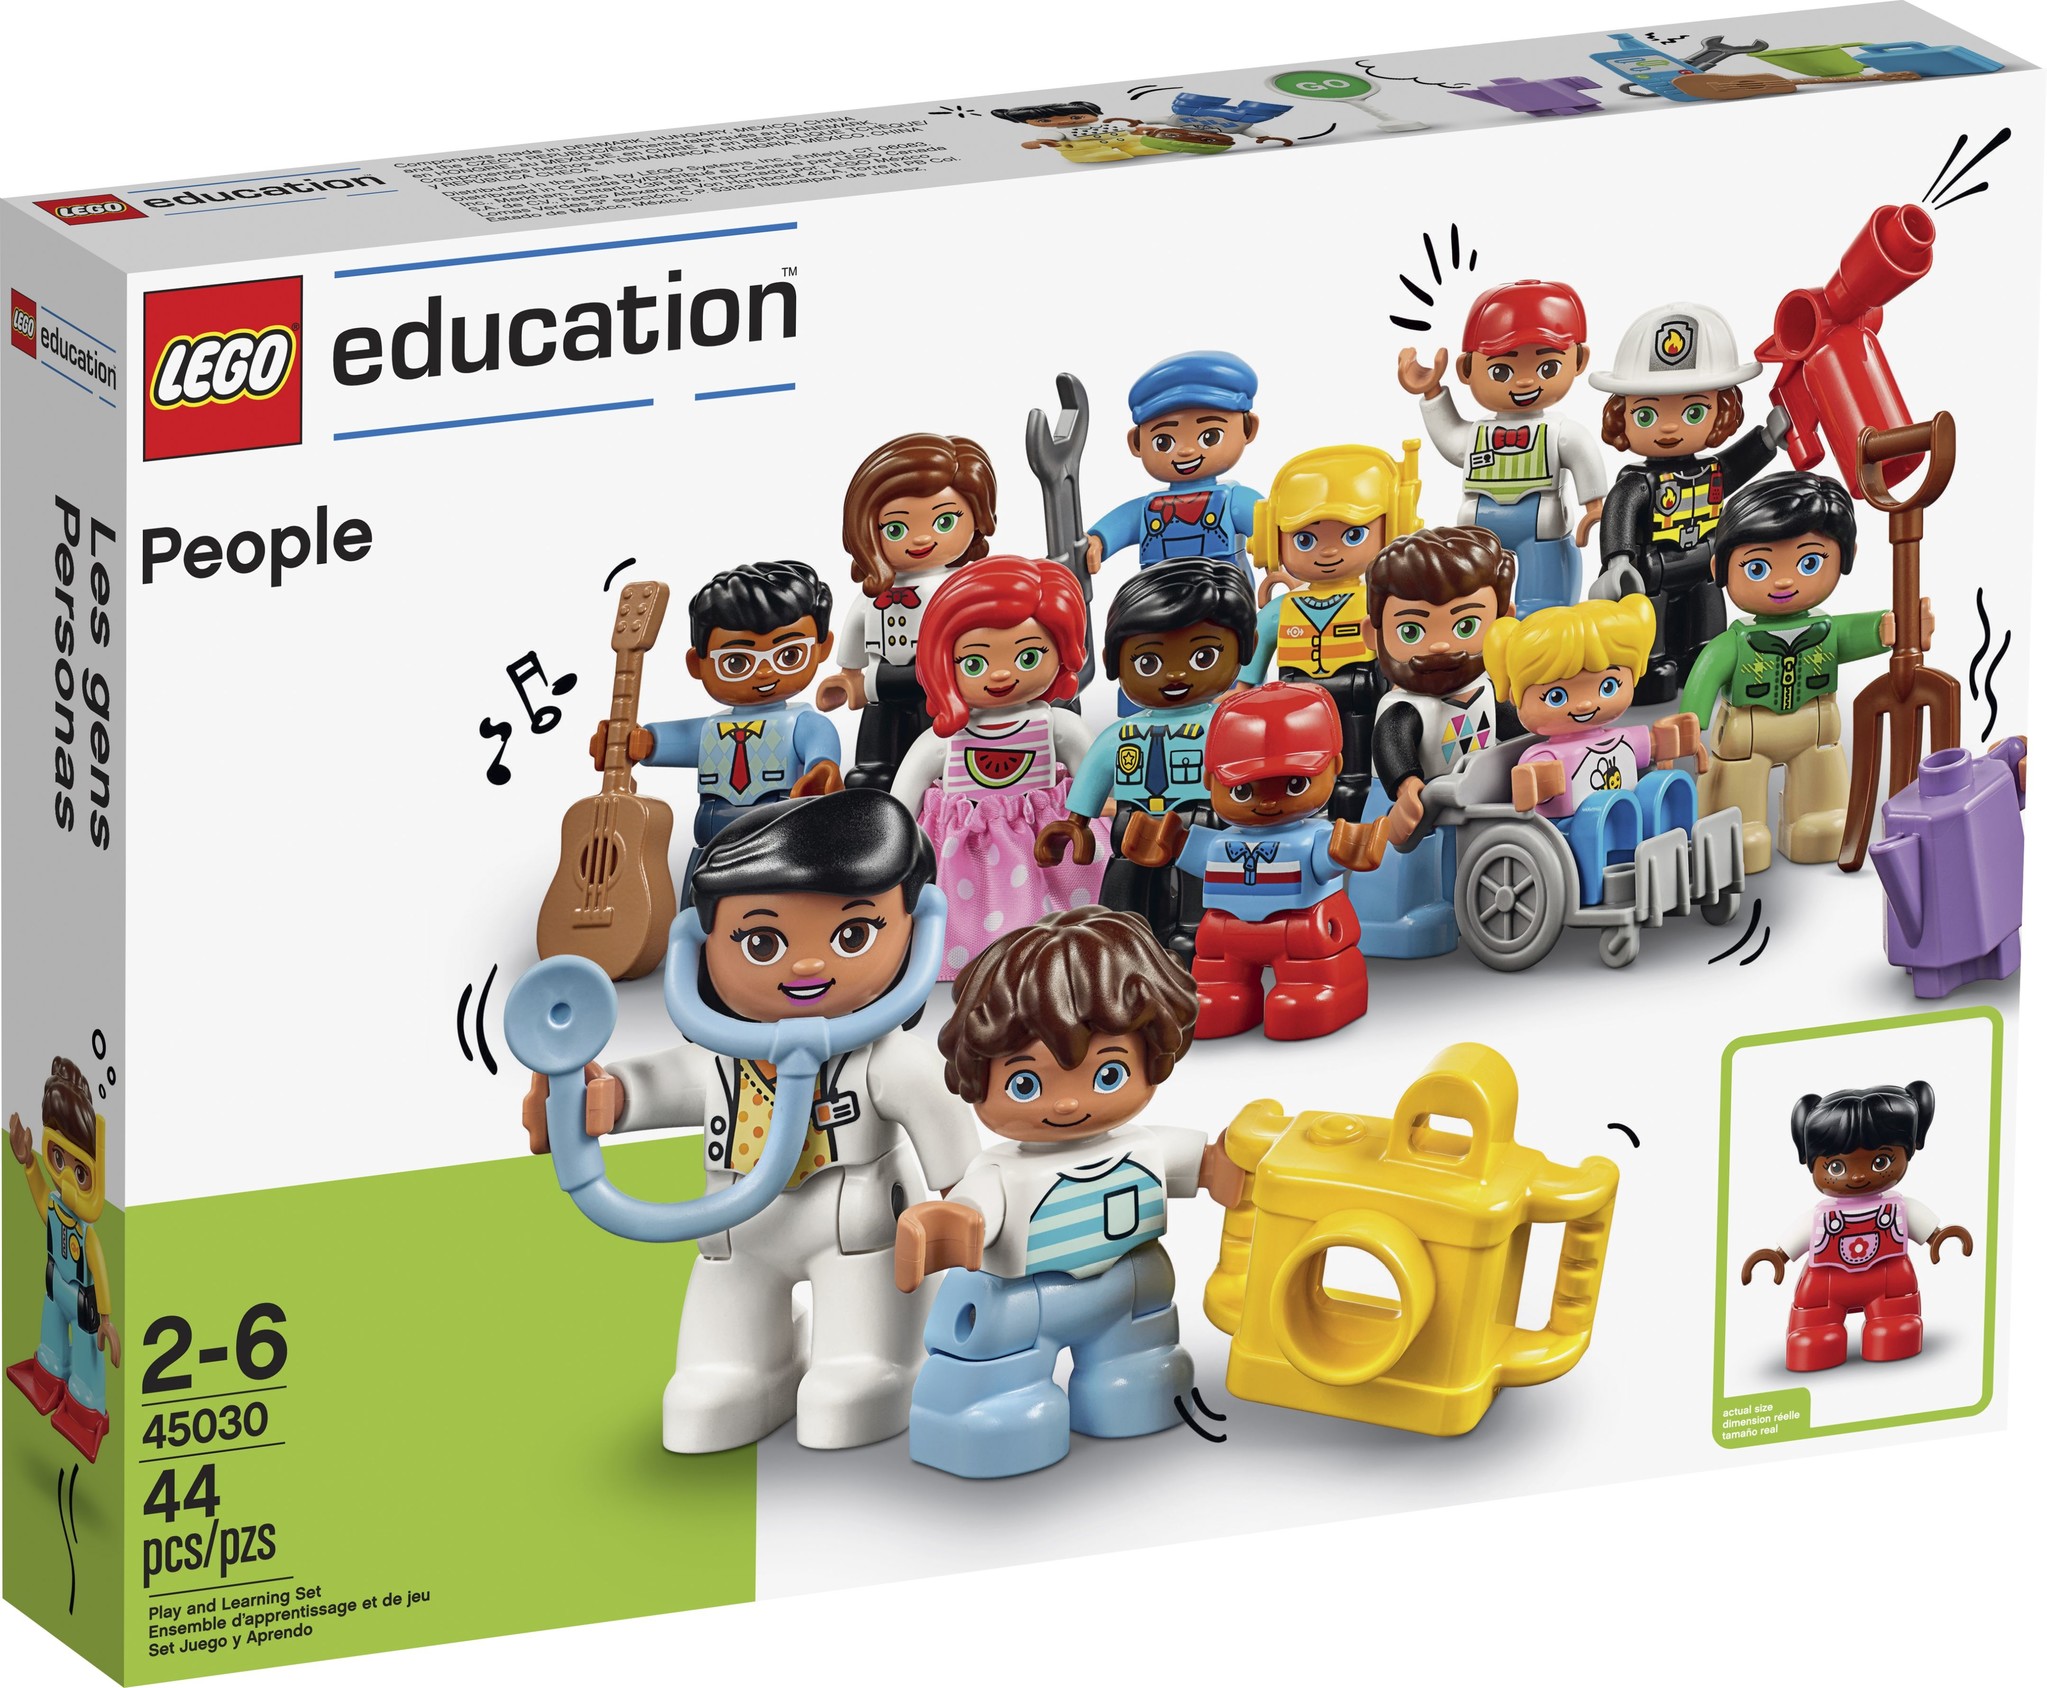 Kan niet lezen of schrijven abces telescoop LEGO DUPLO Minifiguren set 45030 - voordelig kopen bij Kinderspel® -  Kinderspel ®